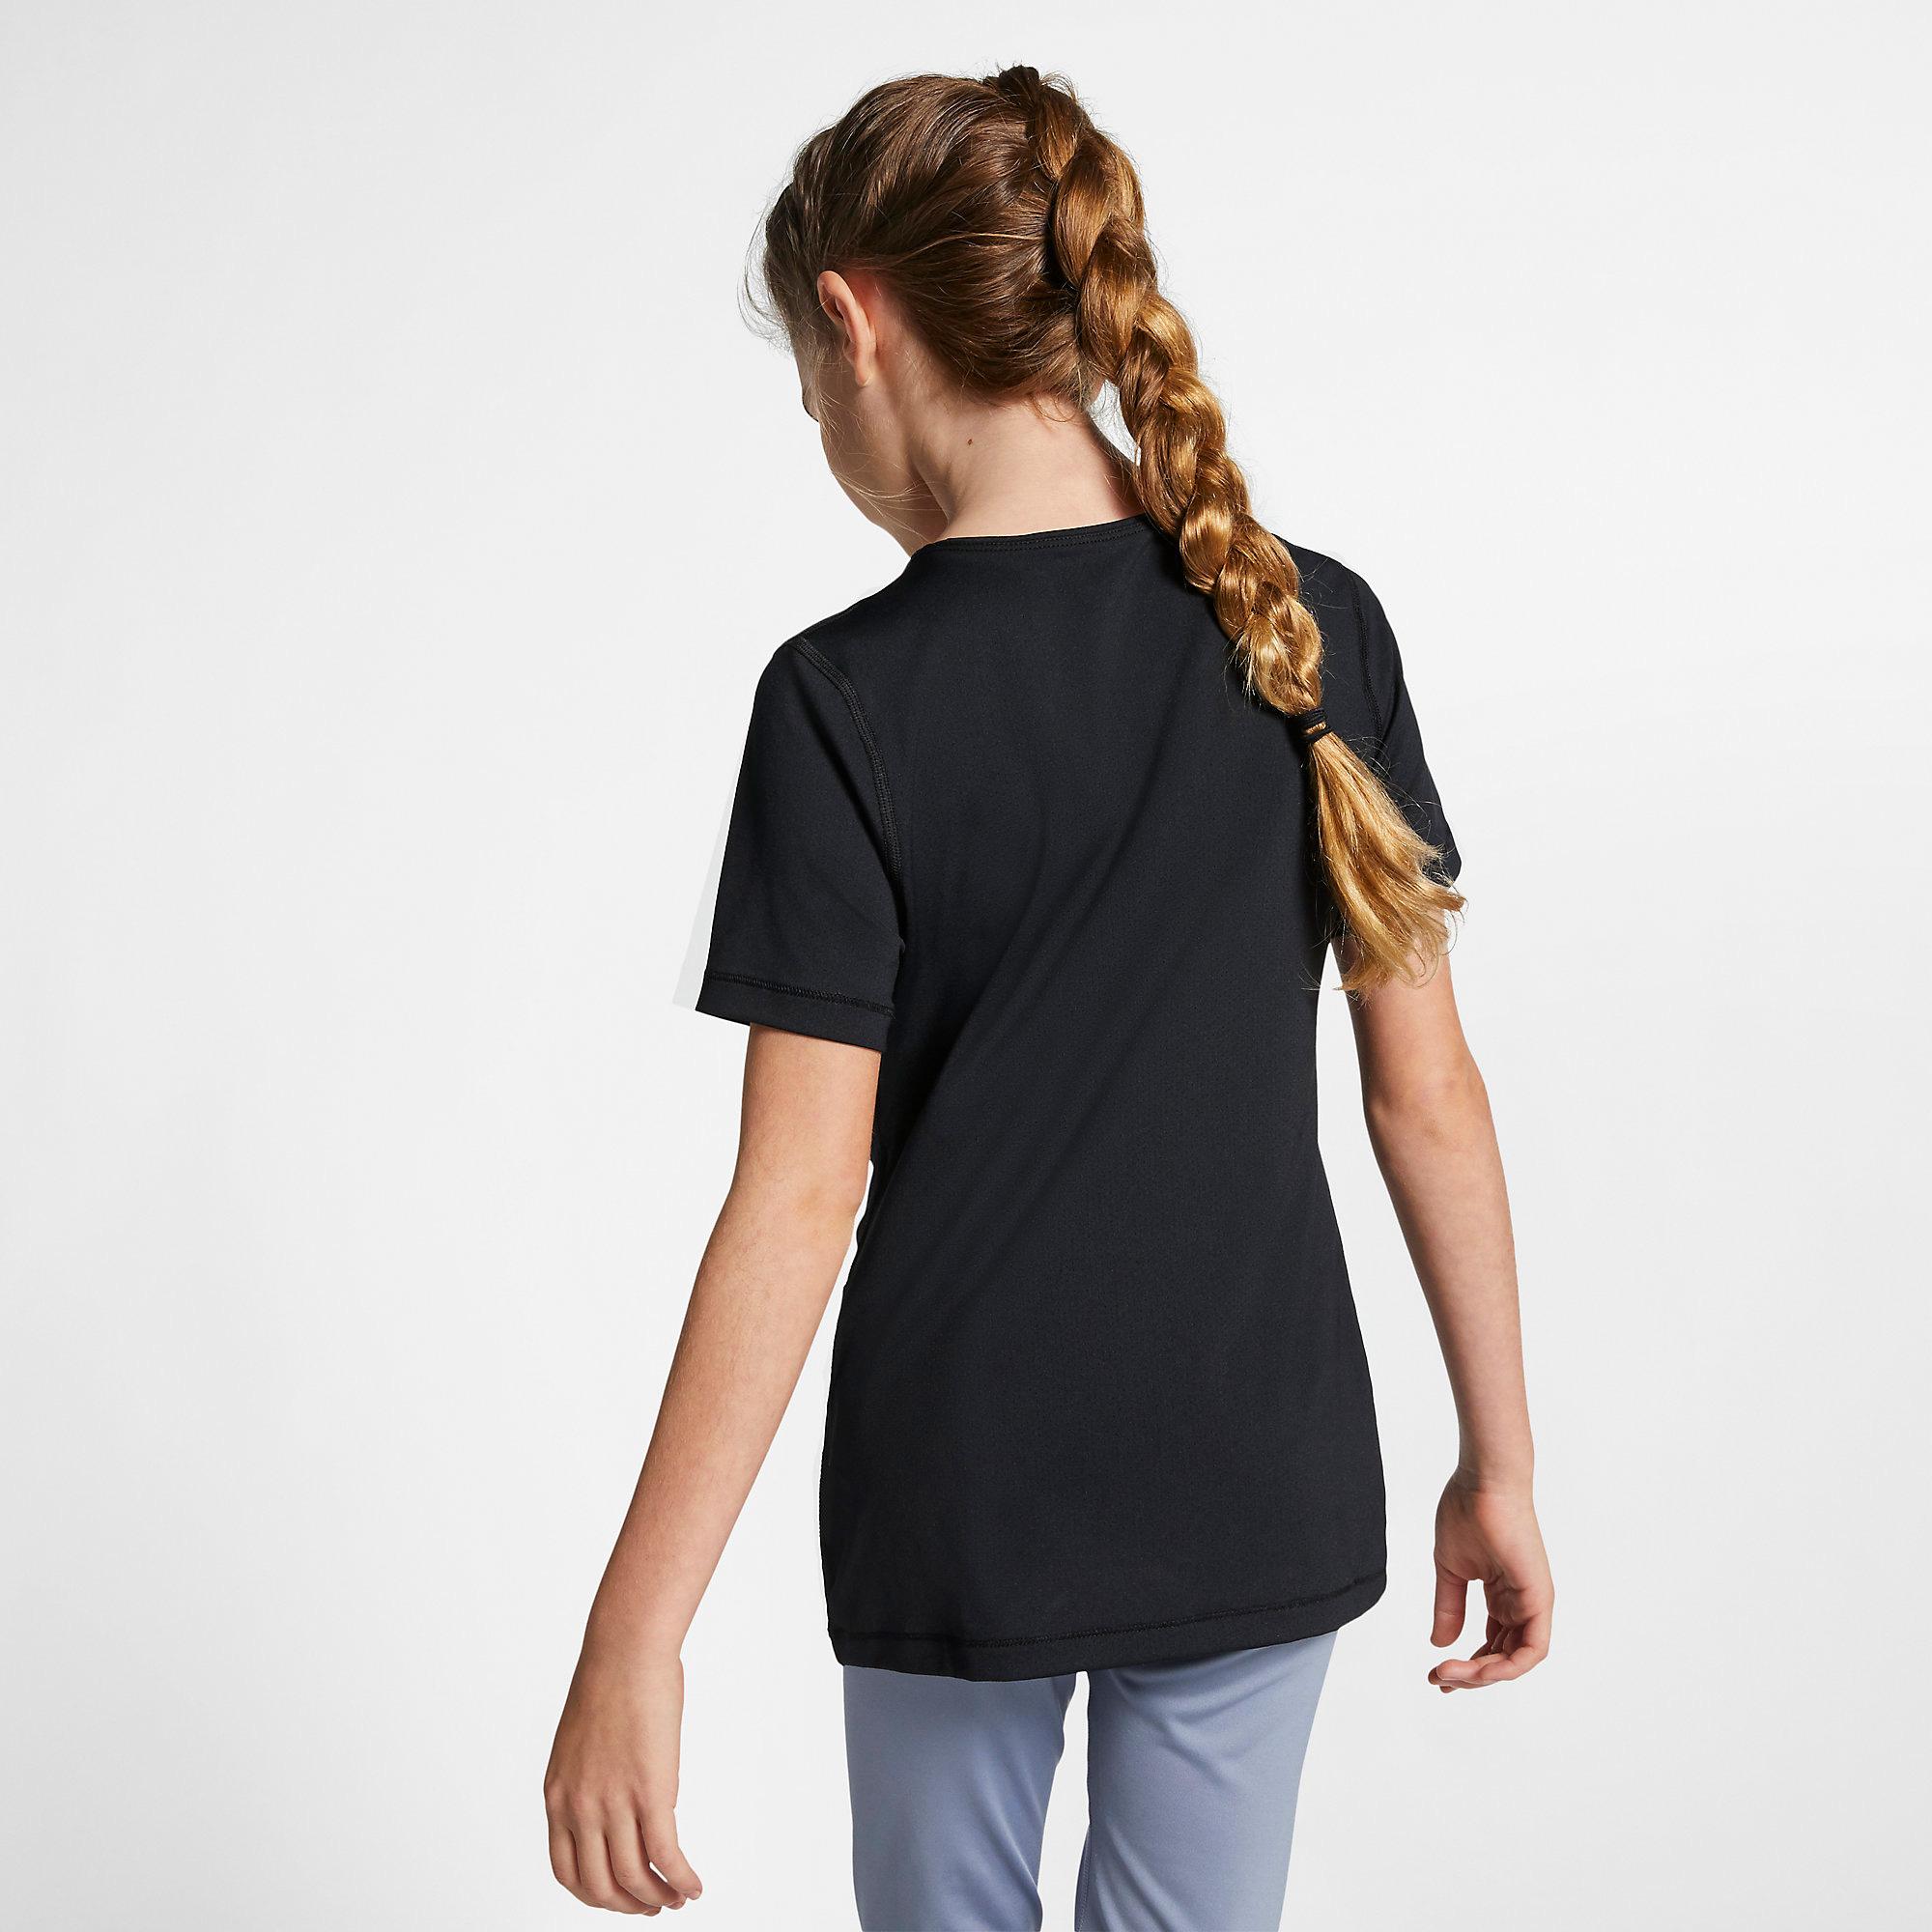 Nike Pro Girls Short Sleeved Top - Black - Tennisnuts.com